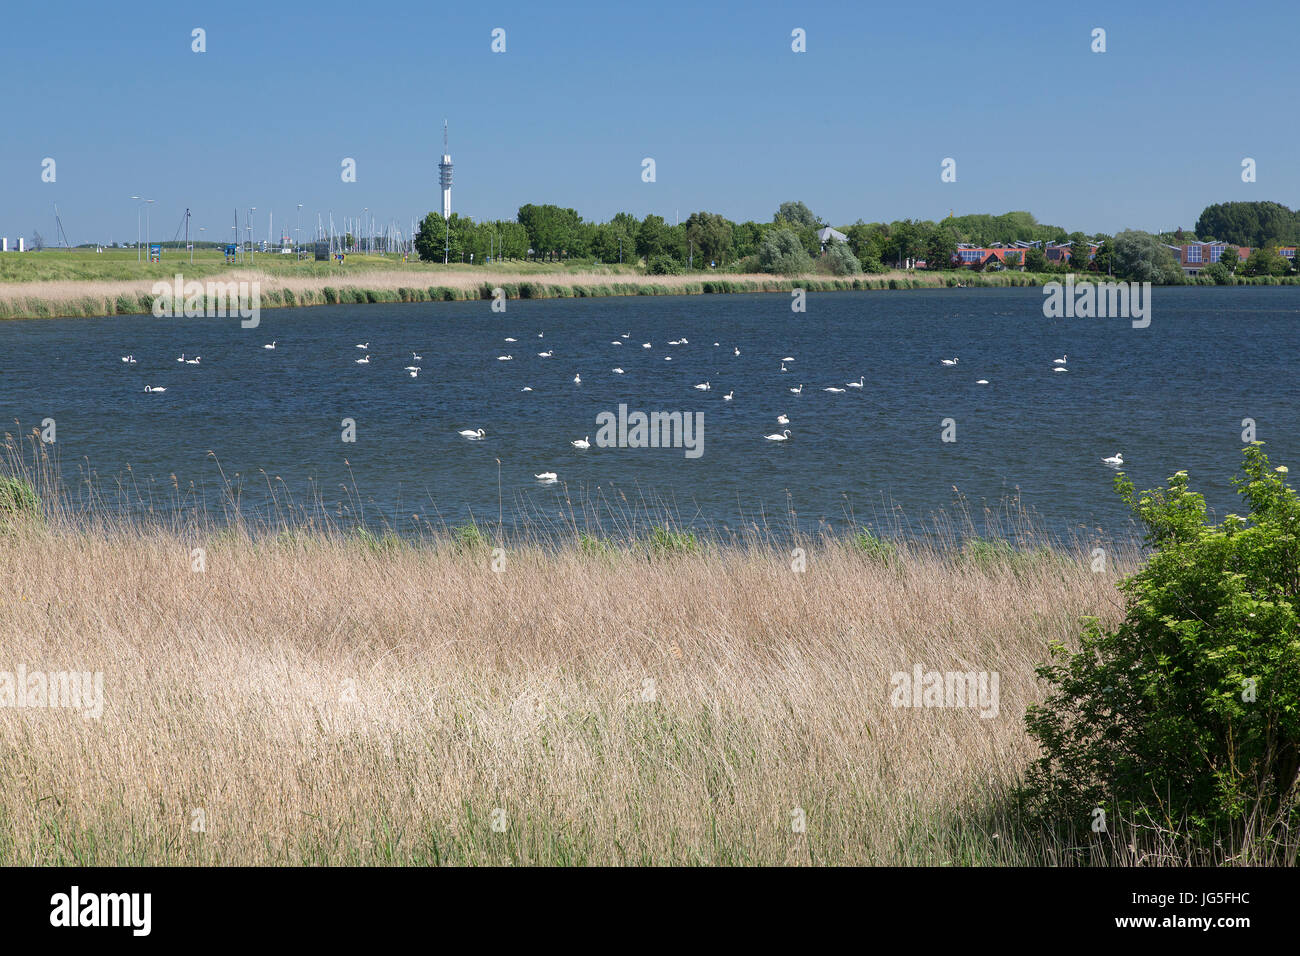 Dozens of  Mute swans (Cygnus olor) on lake, Lelystad, Flevoland, Netherlands Stock Photo